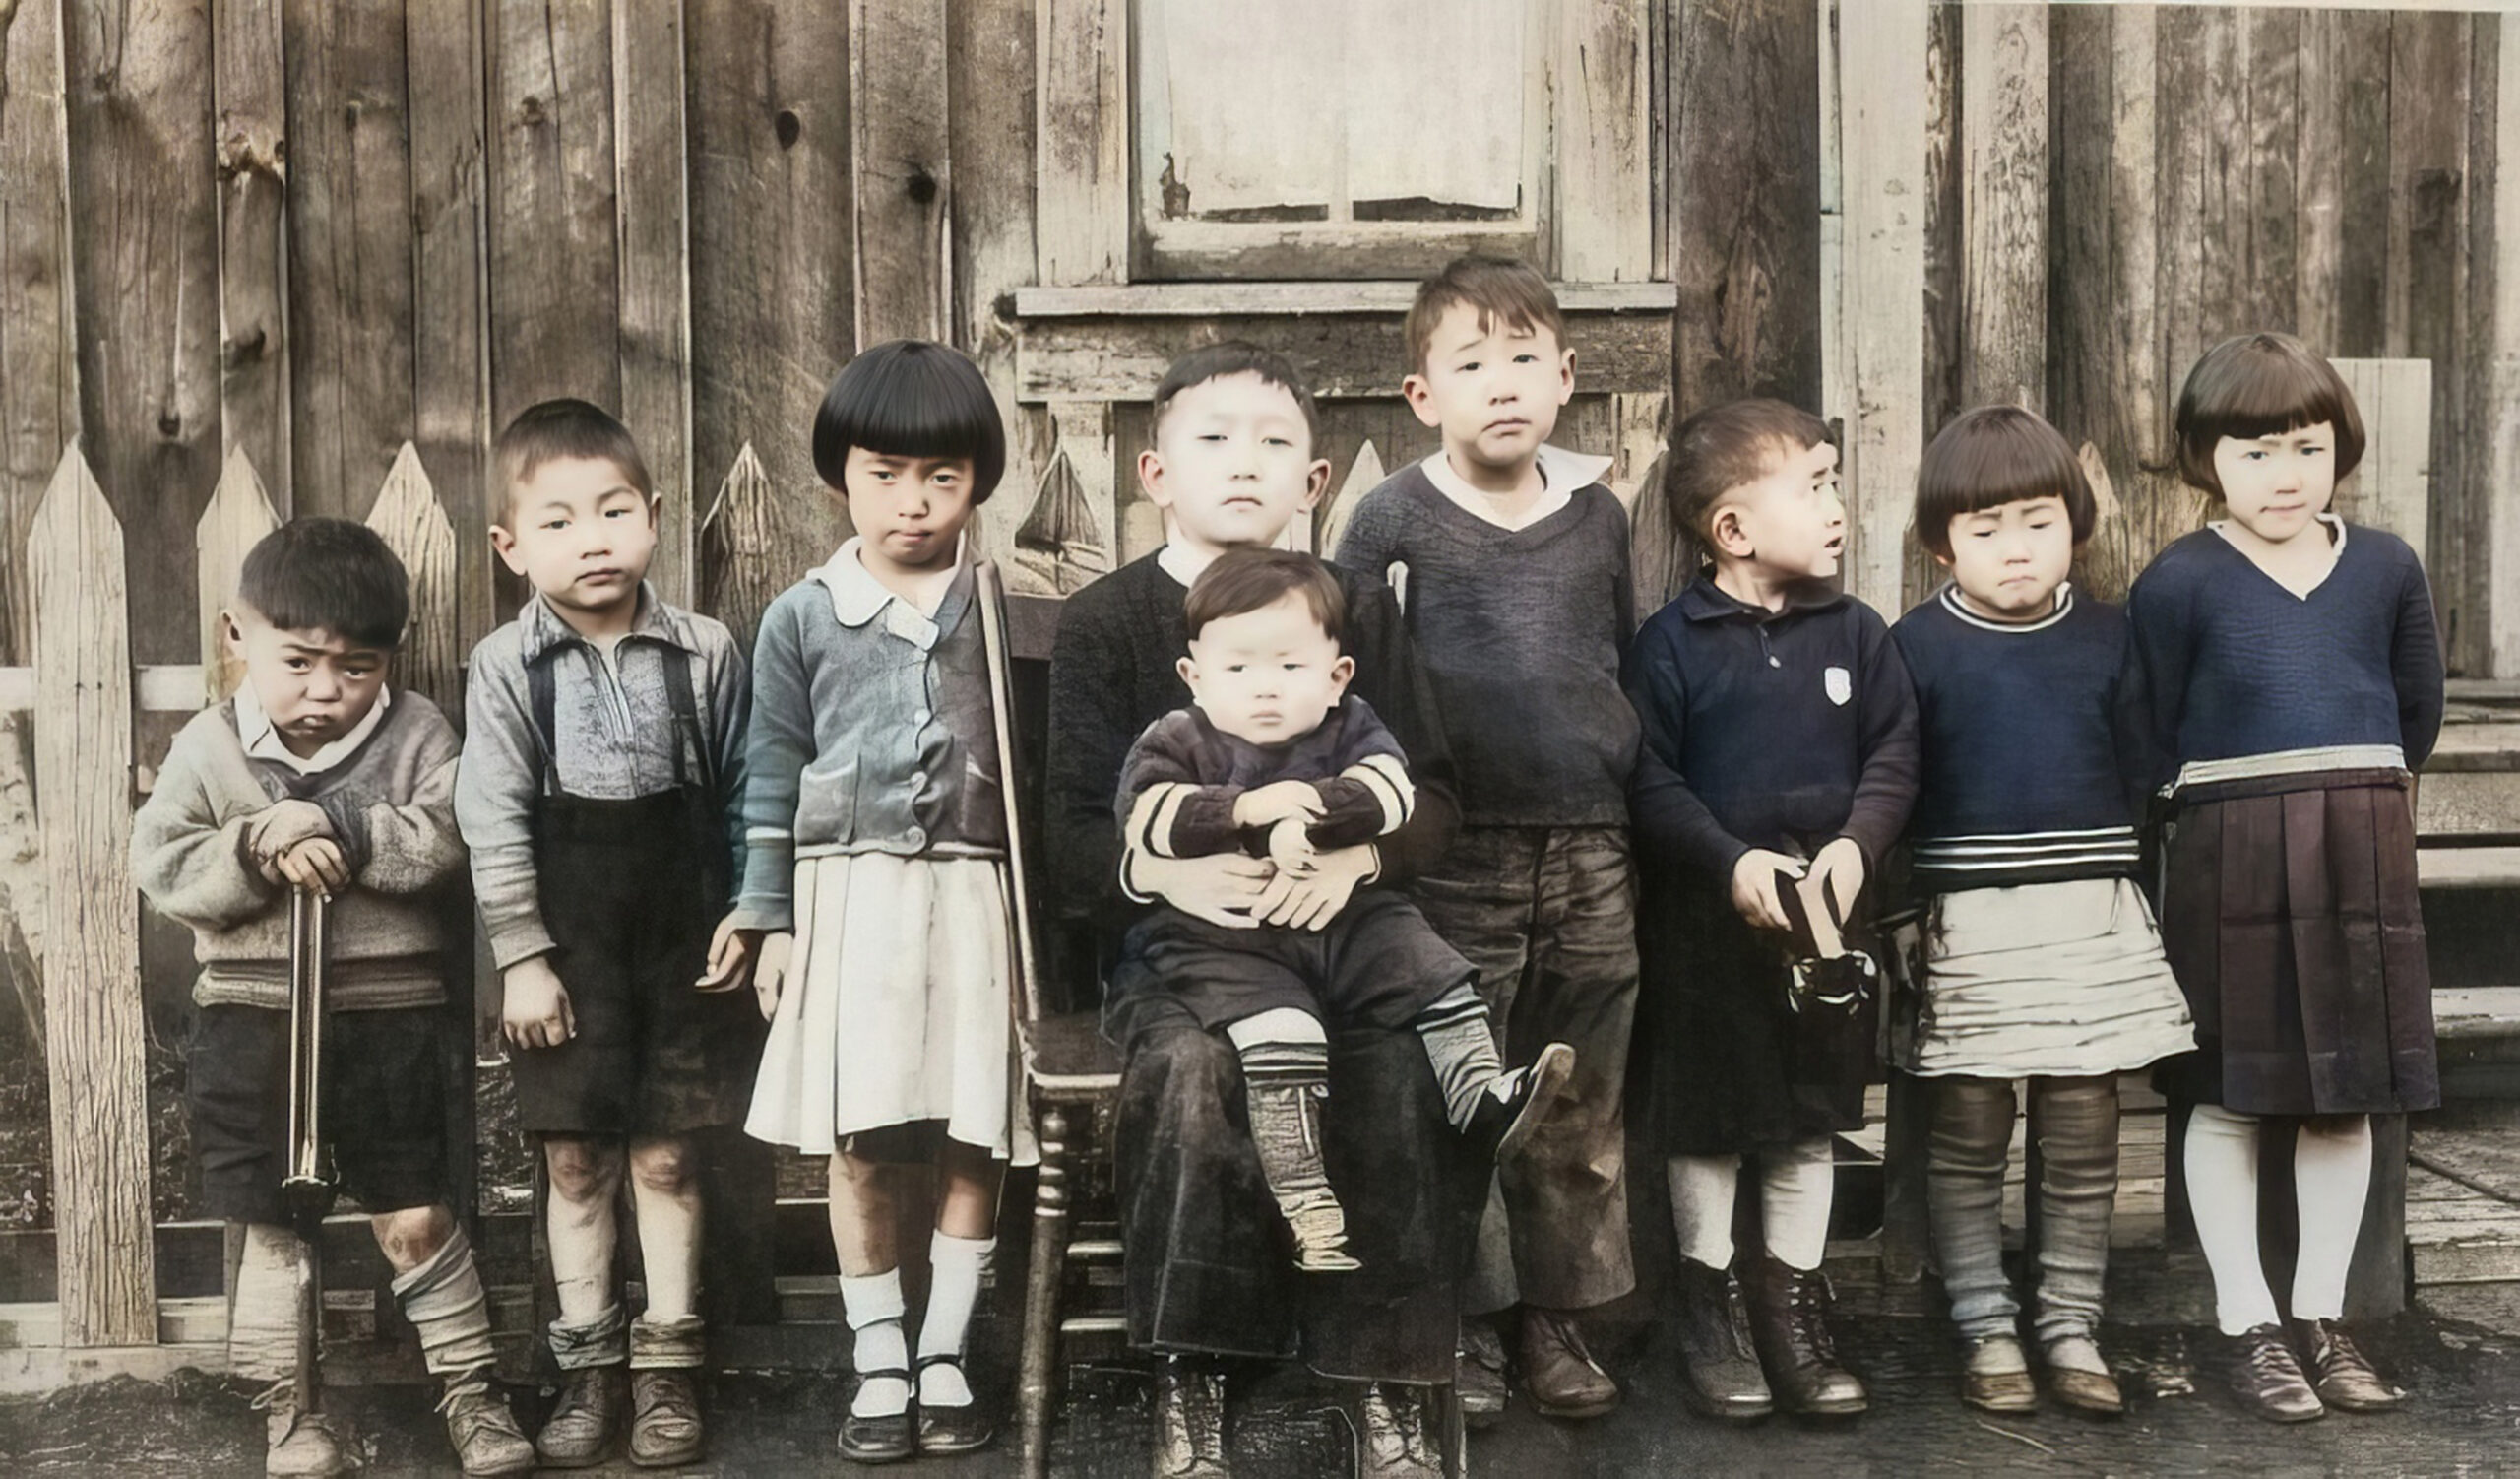 Royston Mill Children Before Internment